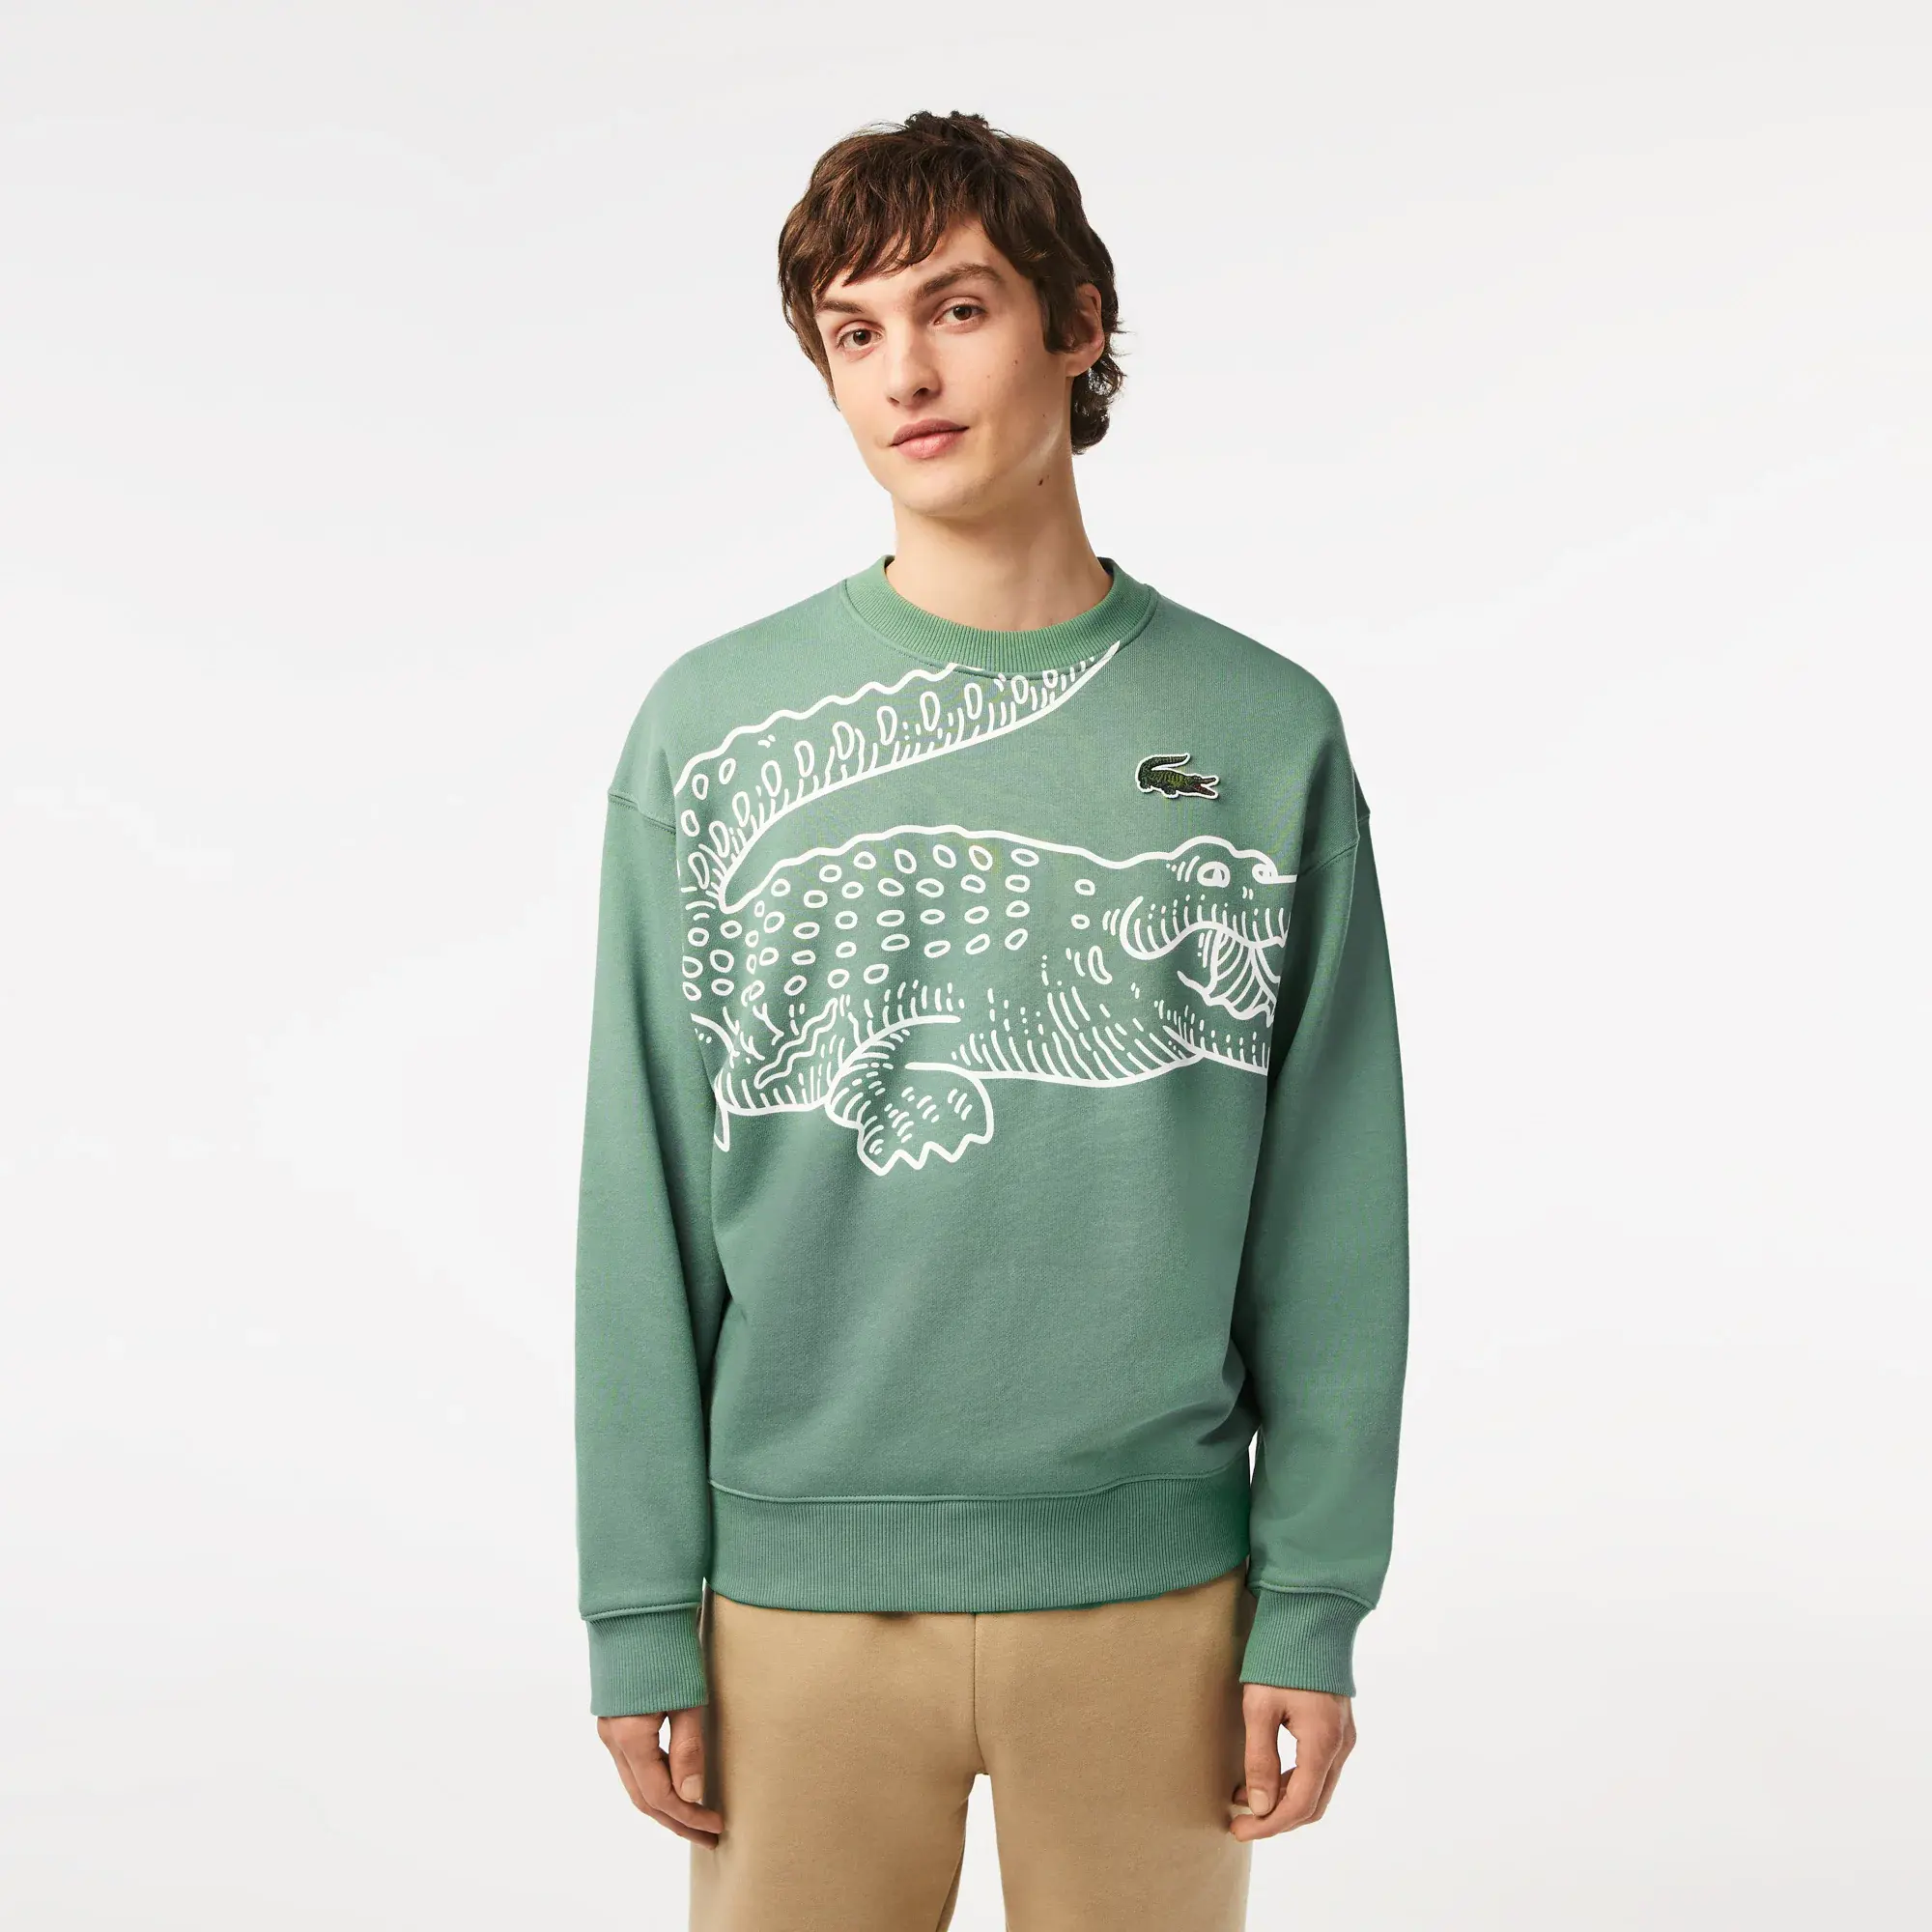 Lacoste Men’s Crew Neck Loose Fit Croc Print Sweatshirt. 1